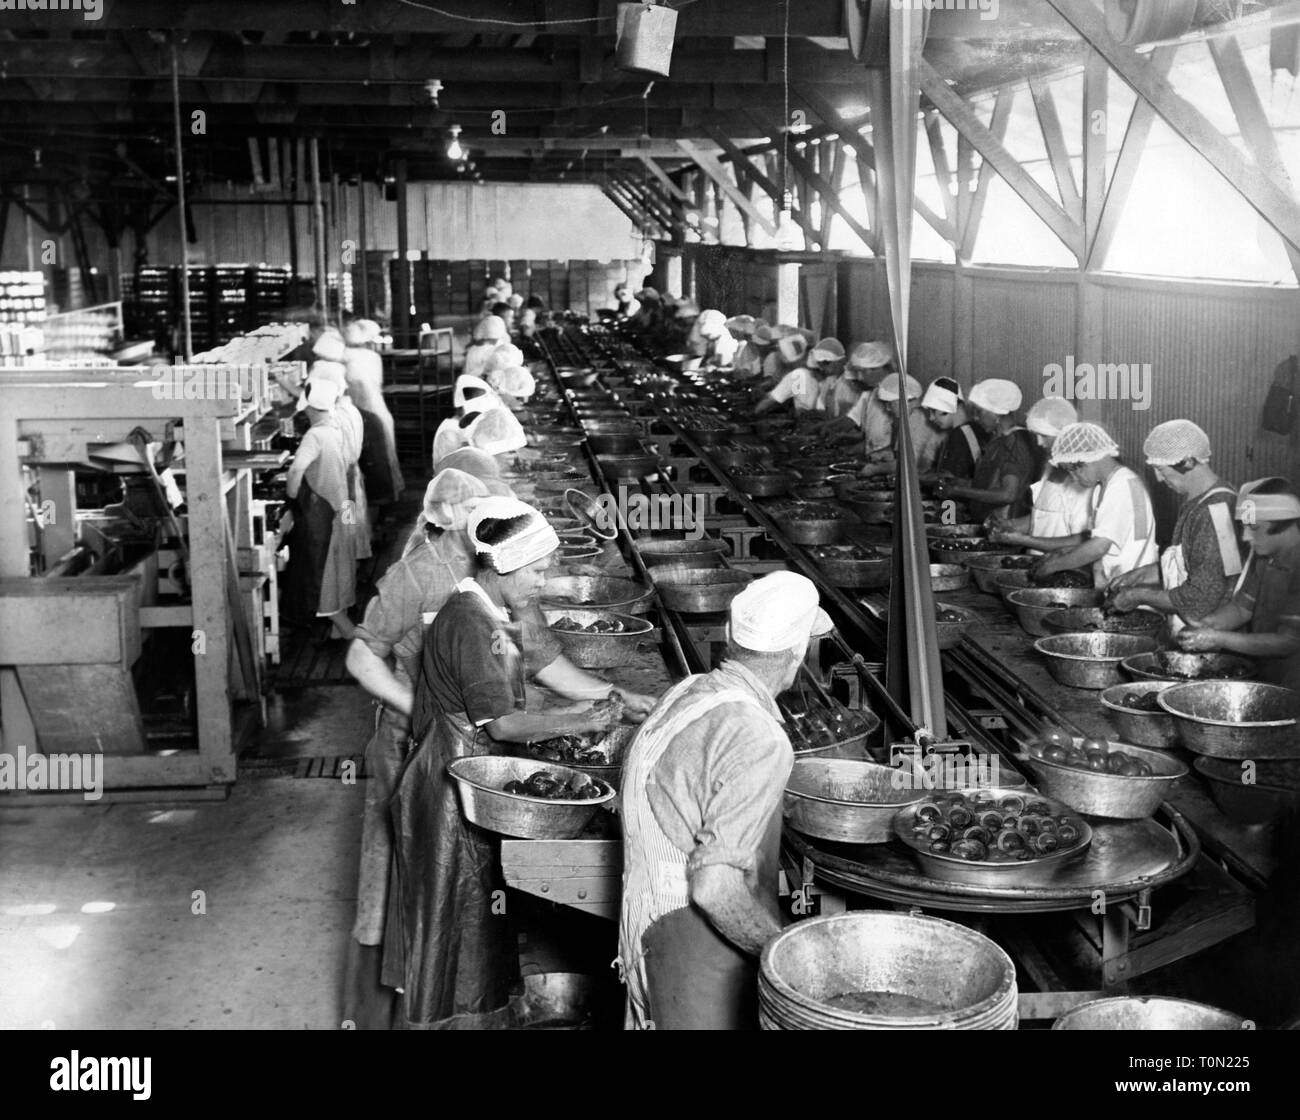 Amerika, Kalifornien, Arbeiter die Früchte Store zu waschen, 1920  Stockfotografie - Alamy